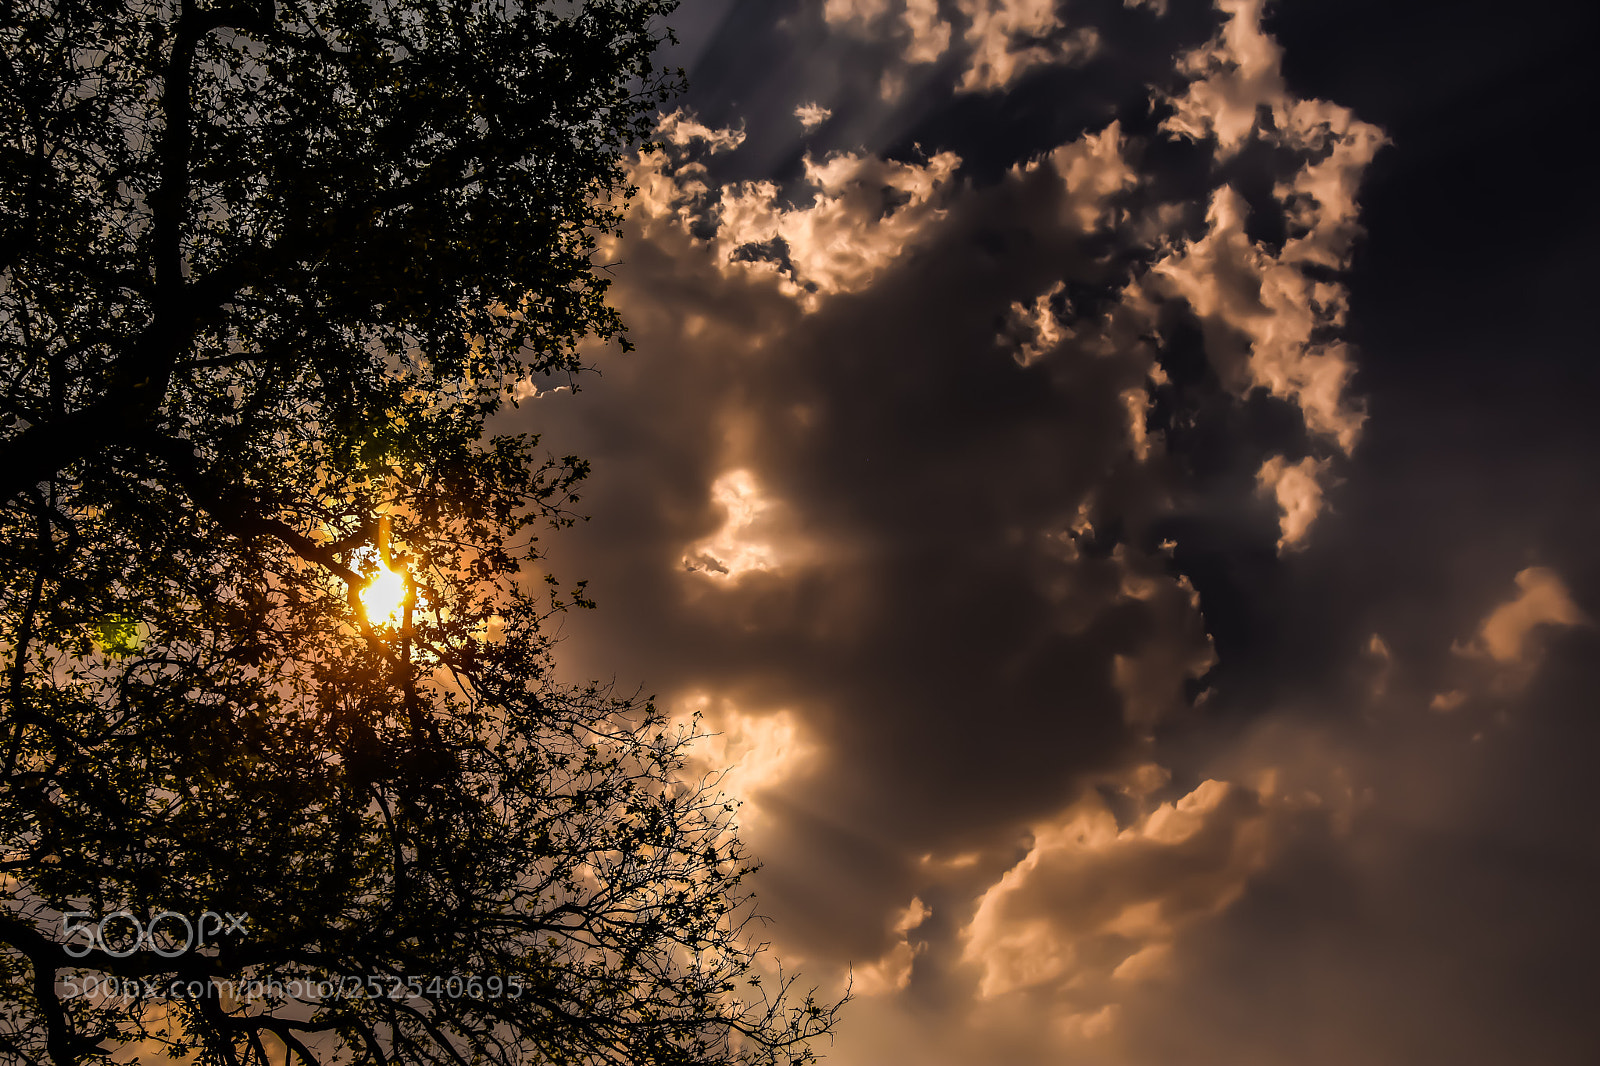 Nikon D7200 sample photo. Evening sky clouds photography